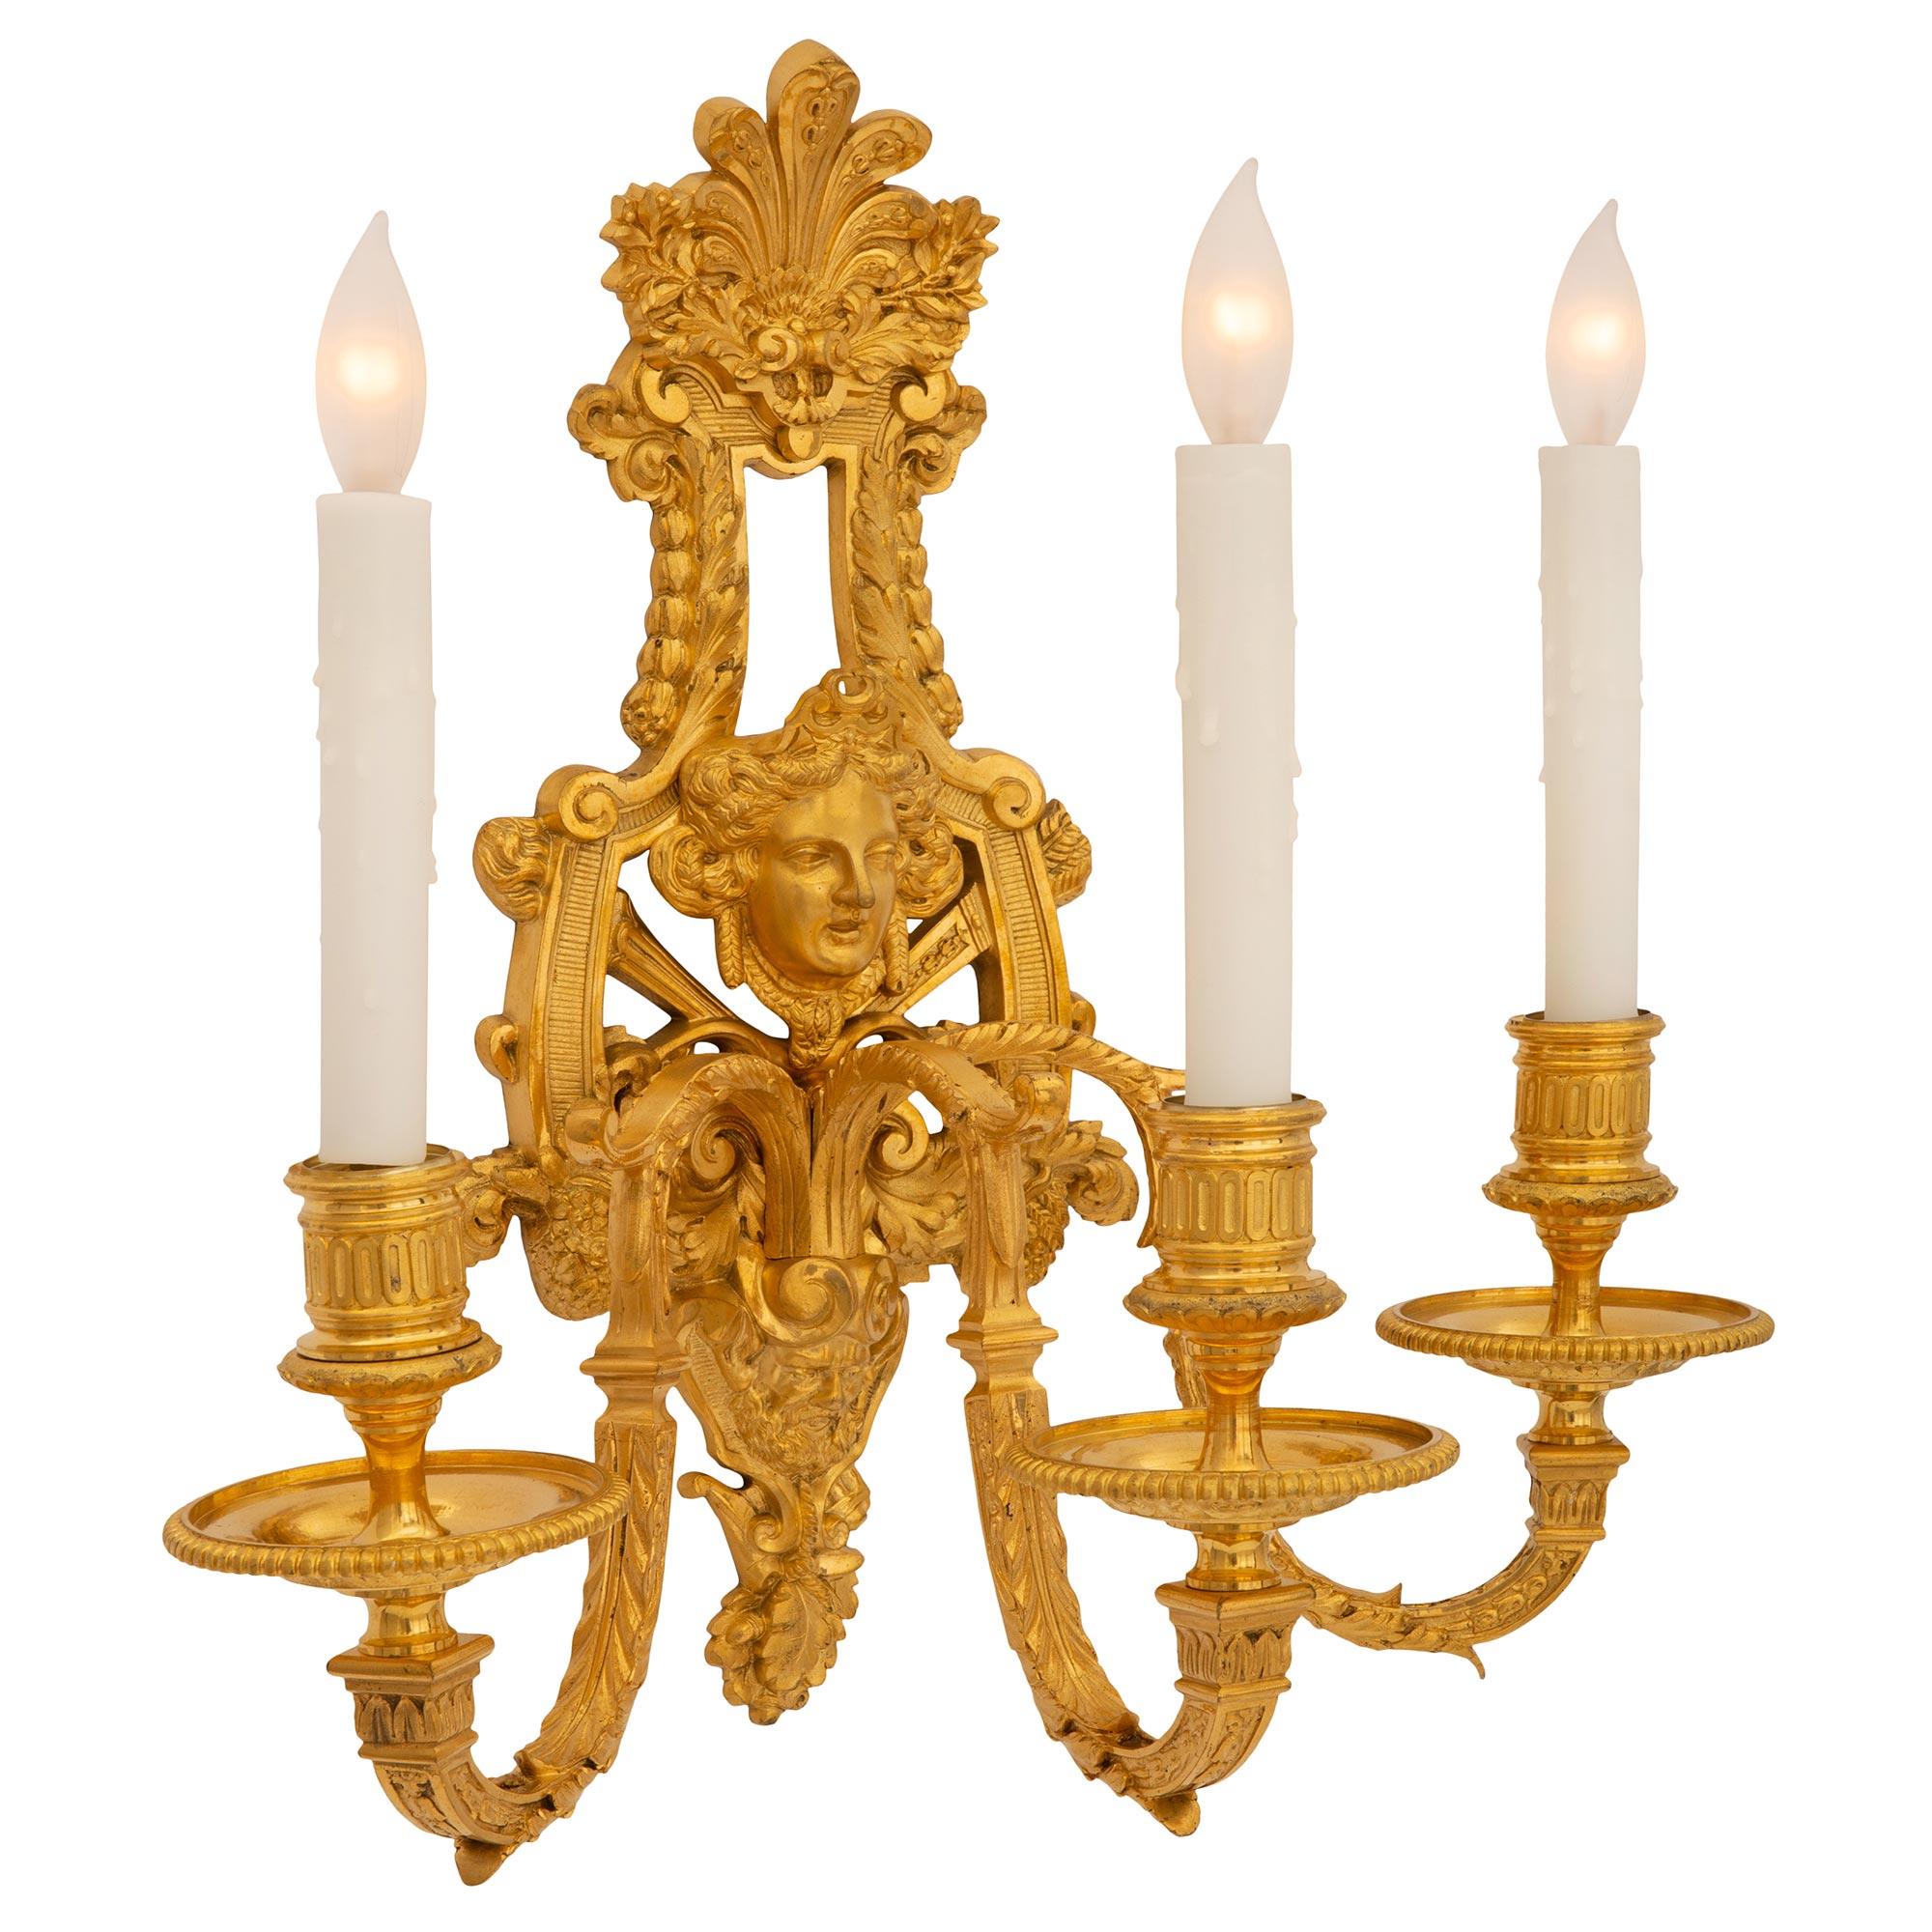 Une belle paire d'appliques françaises du 19ème siècle, de style Louis XIV, en bronze doré. Chaque magnifique applique à trois bras est centrée par une plaque arrière en mosaïque merveilleusement exécutée avec un impressionnant satyre perlé, des